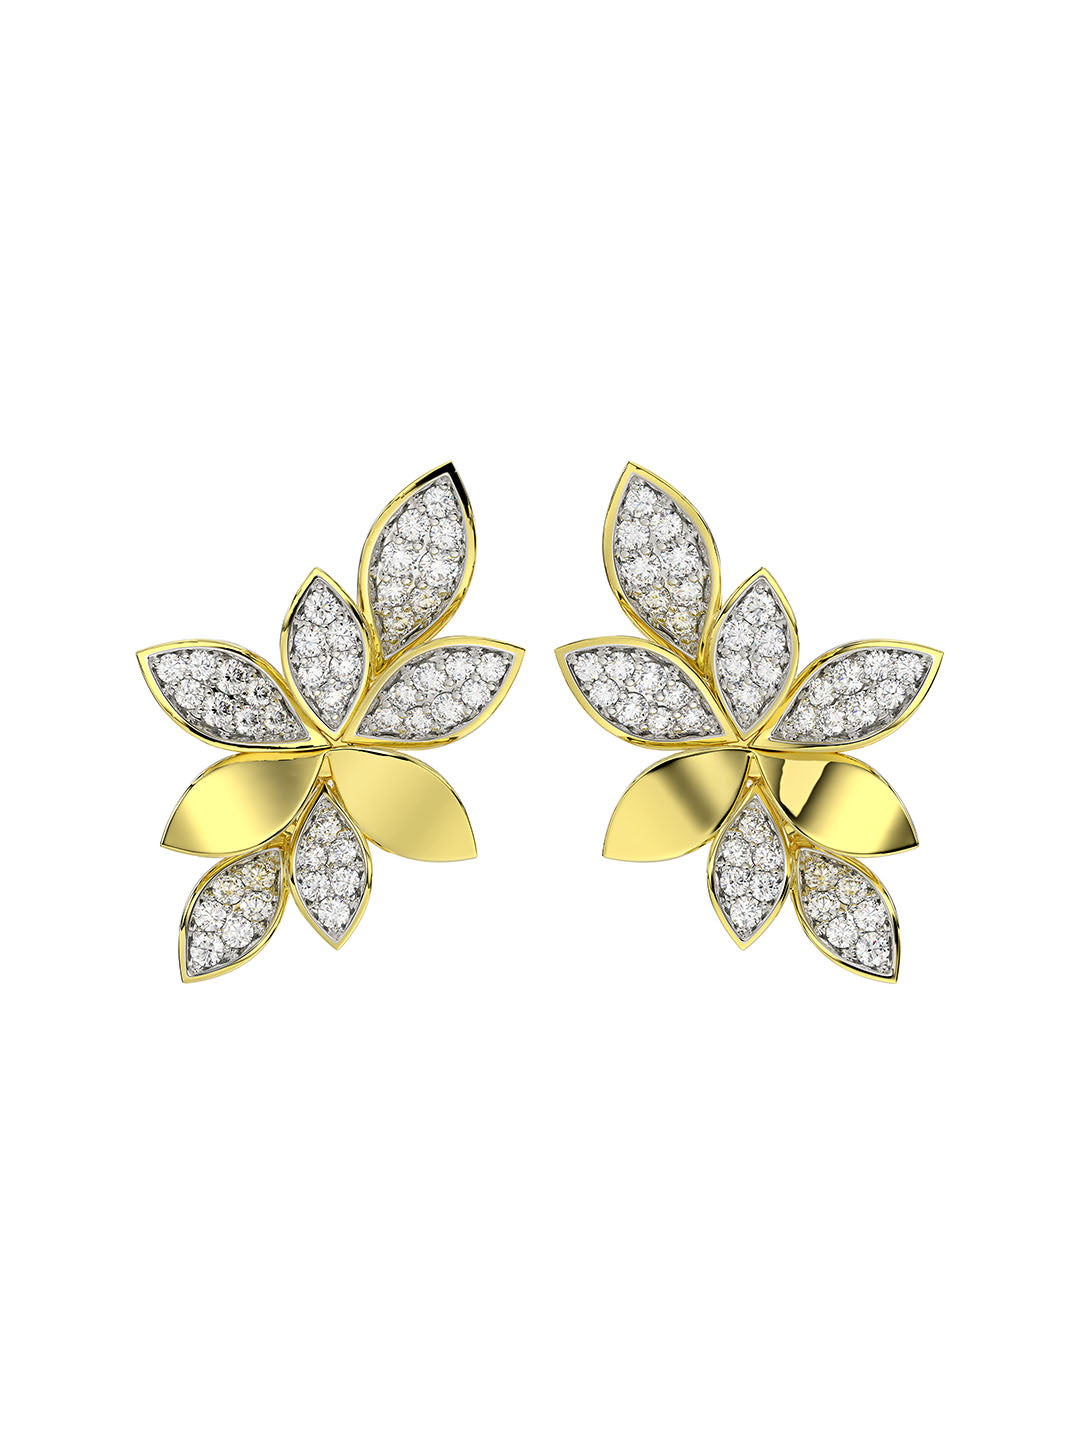 Wild Flower Yellow Gold Earrings | Marchesa